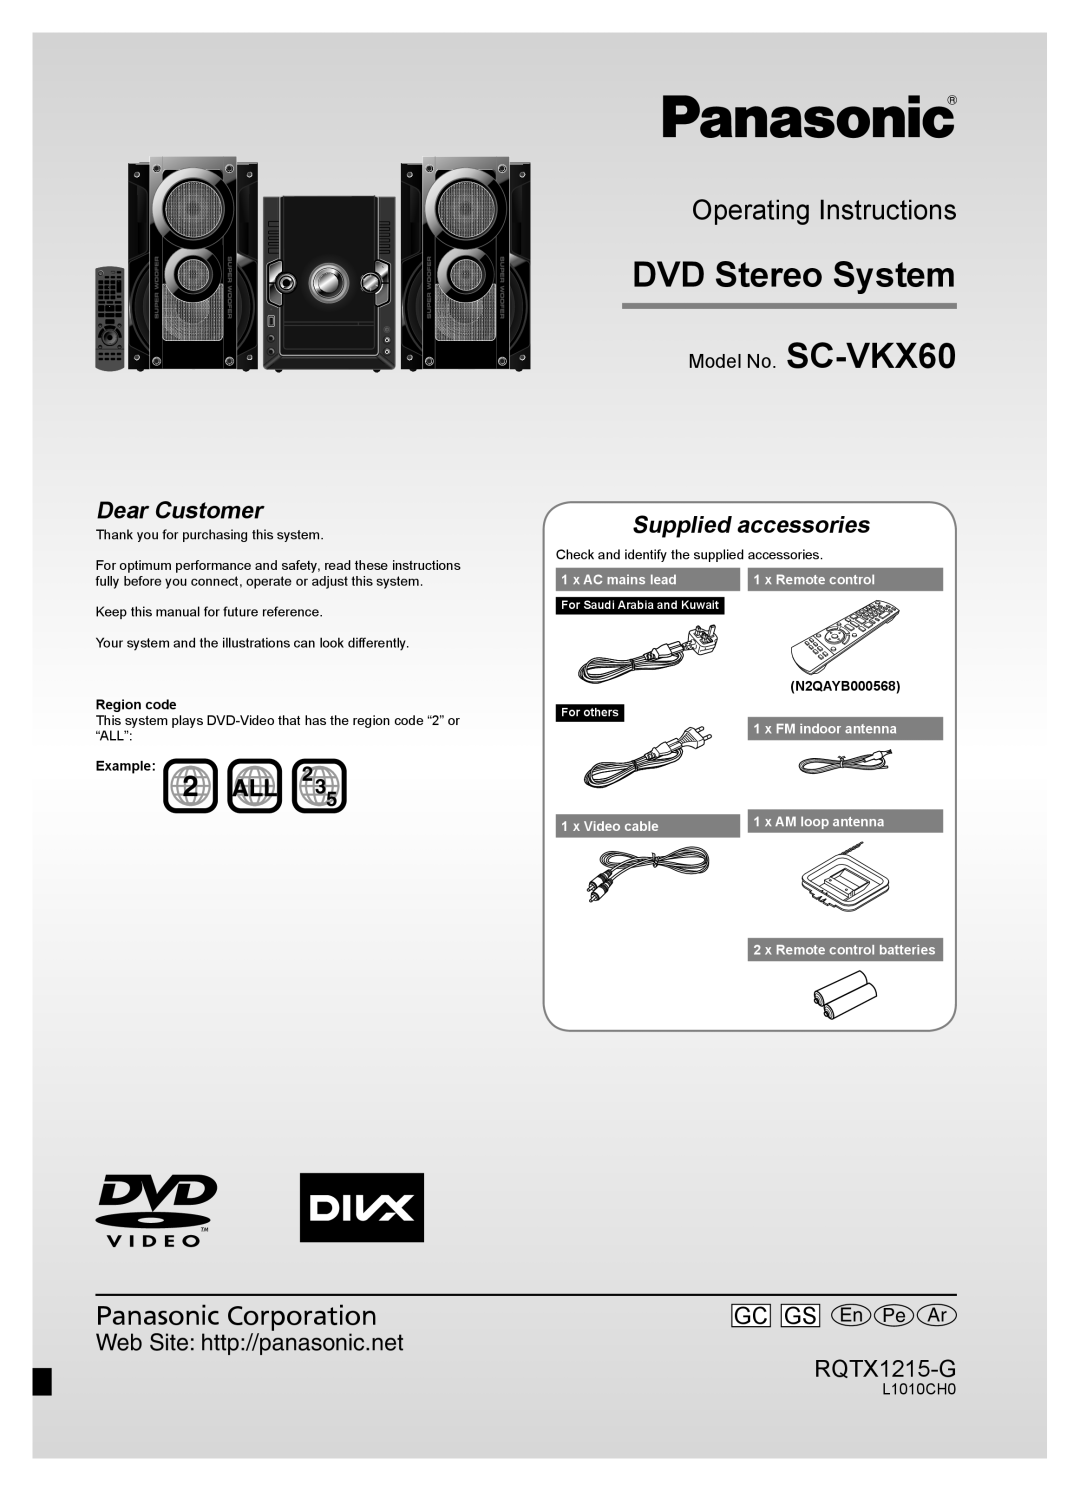 Panasonic SC-VKX60 operating instructions DVD Stereo System, Operating Instructions, Supplied accessories, RQTX1215-G 